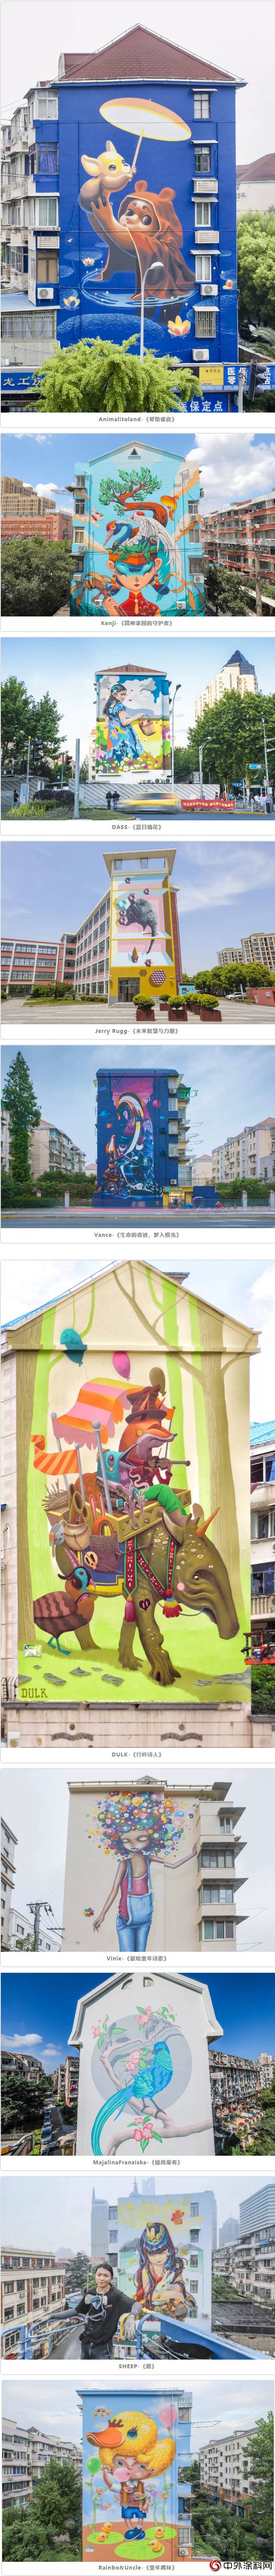 立邦「为爱上色」艺术+城市彩绘推动上海市容有机更新，让艺术与社区融为一体"
129440"